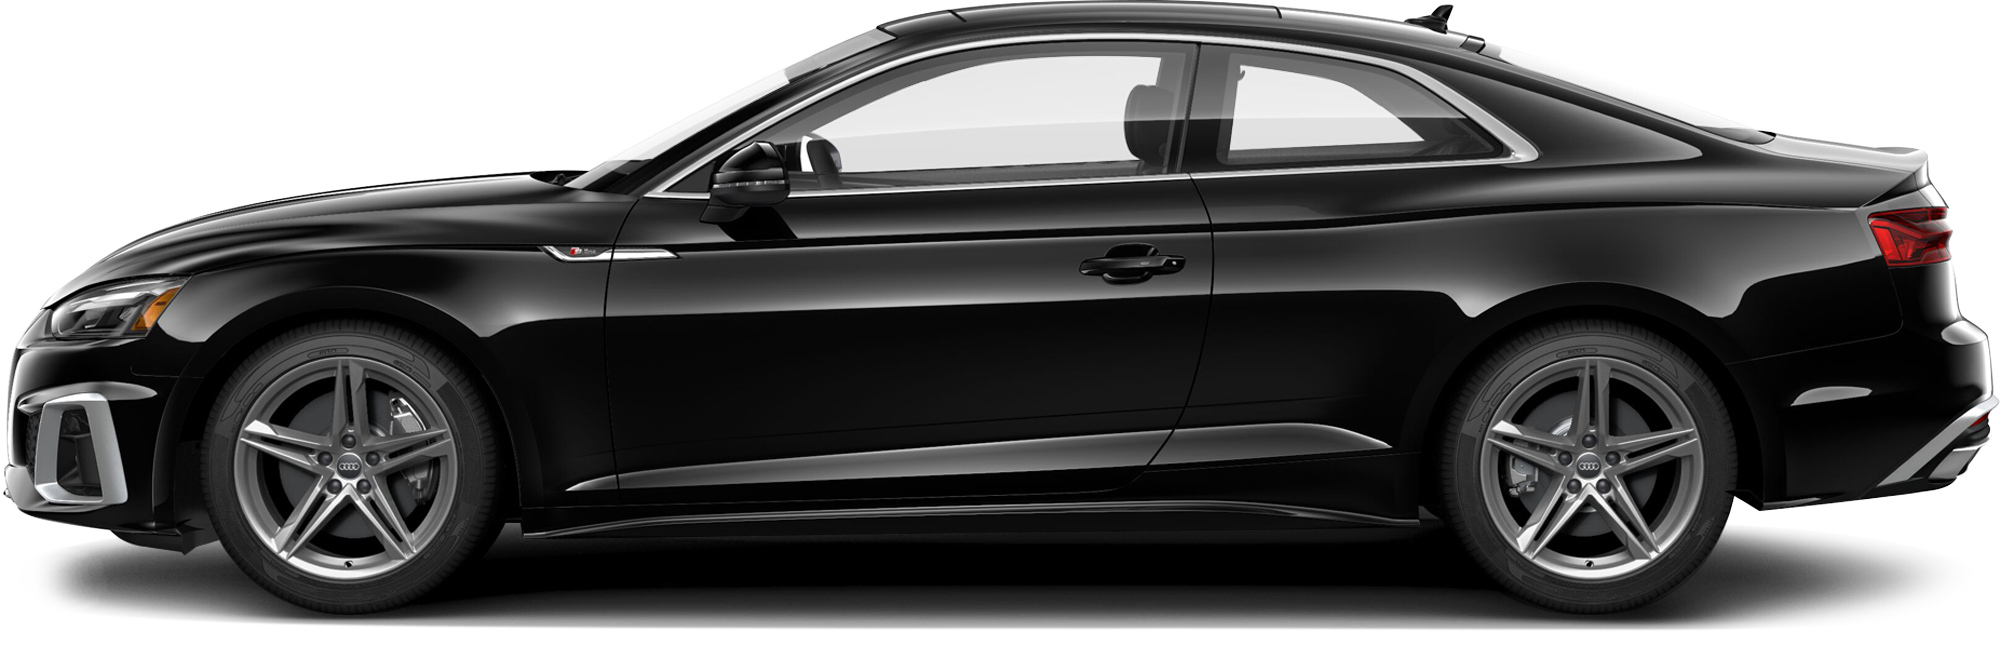 http://images.dealer.com/ddc/vehicles/2021/Audi/A5/Coupe/trim_45_Premium_29dd8b/perspective/side-left/2021_24.png